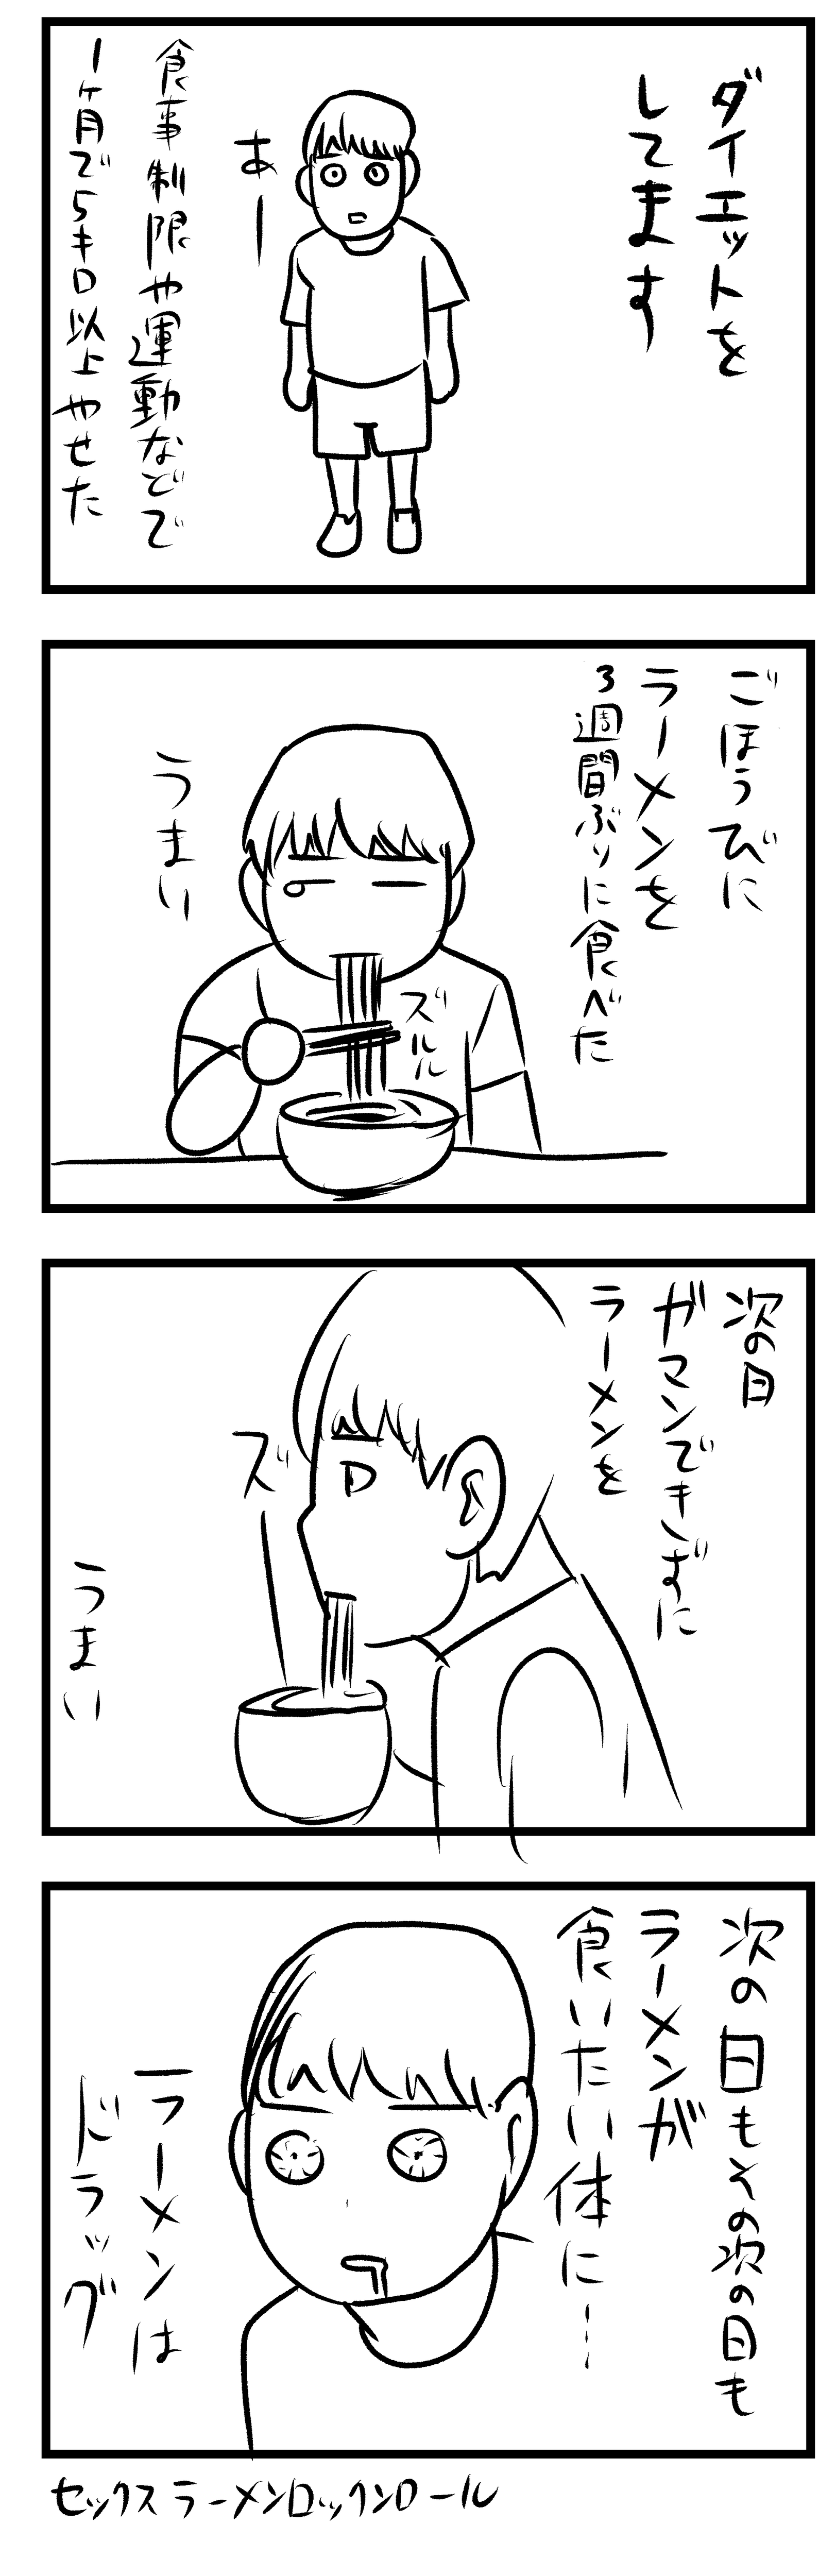 日記漫画 ダイエット 早坂ケイゴのギャグ漫画ブーローグ